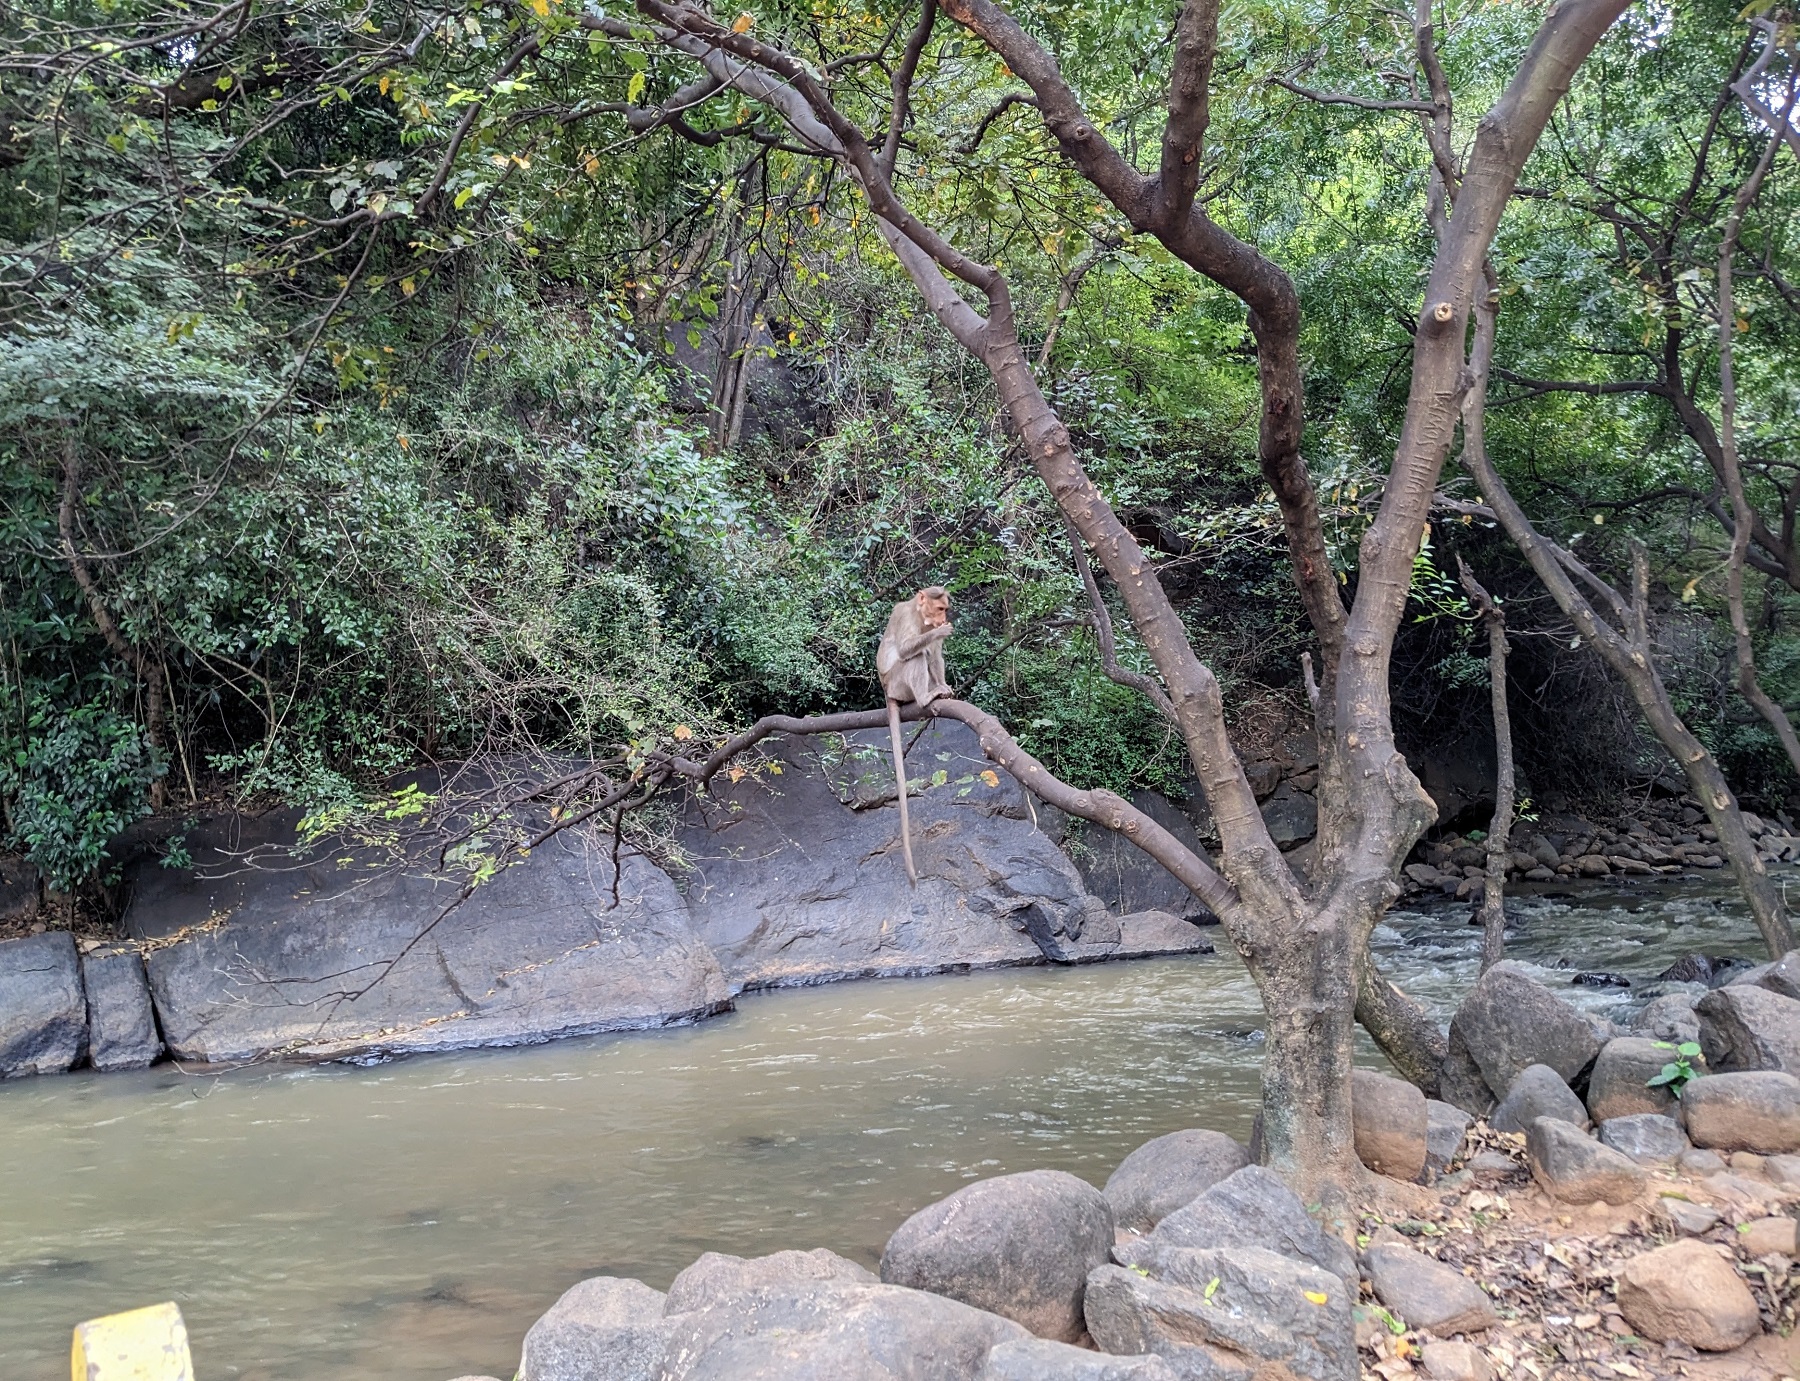 Monkey at Puliancholai-Kolli hills-Tamil Nadu